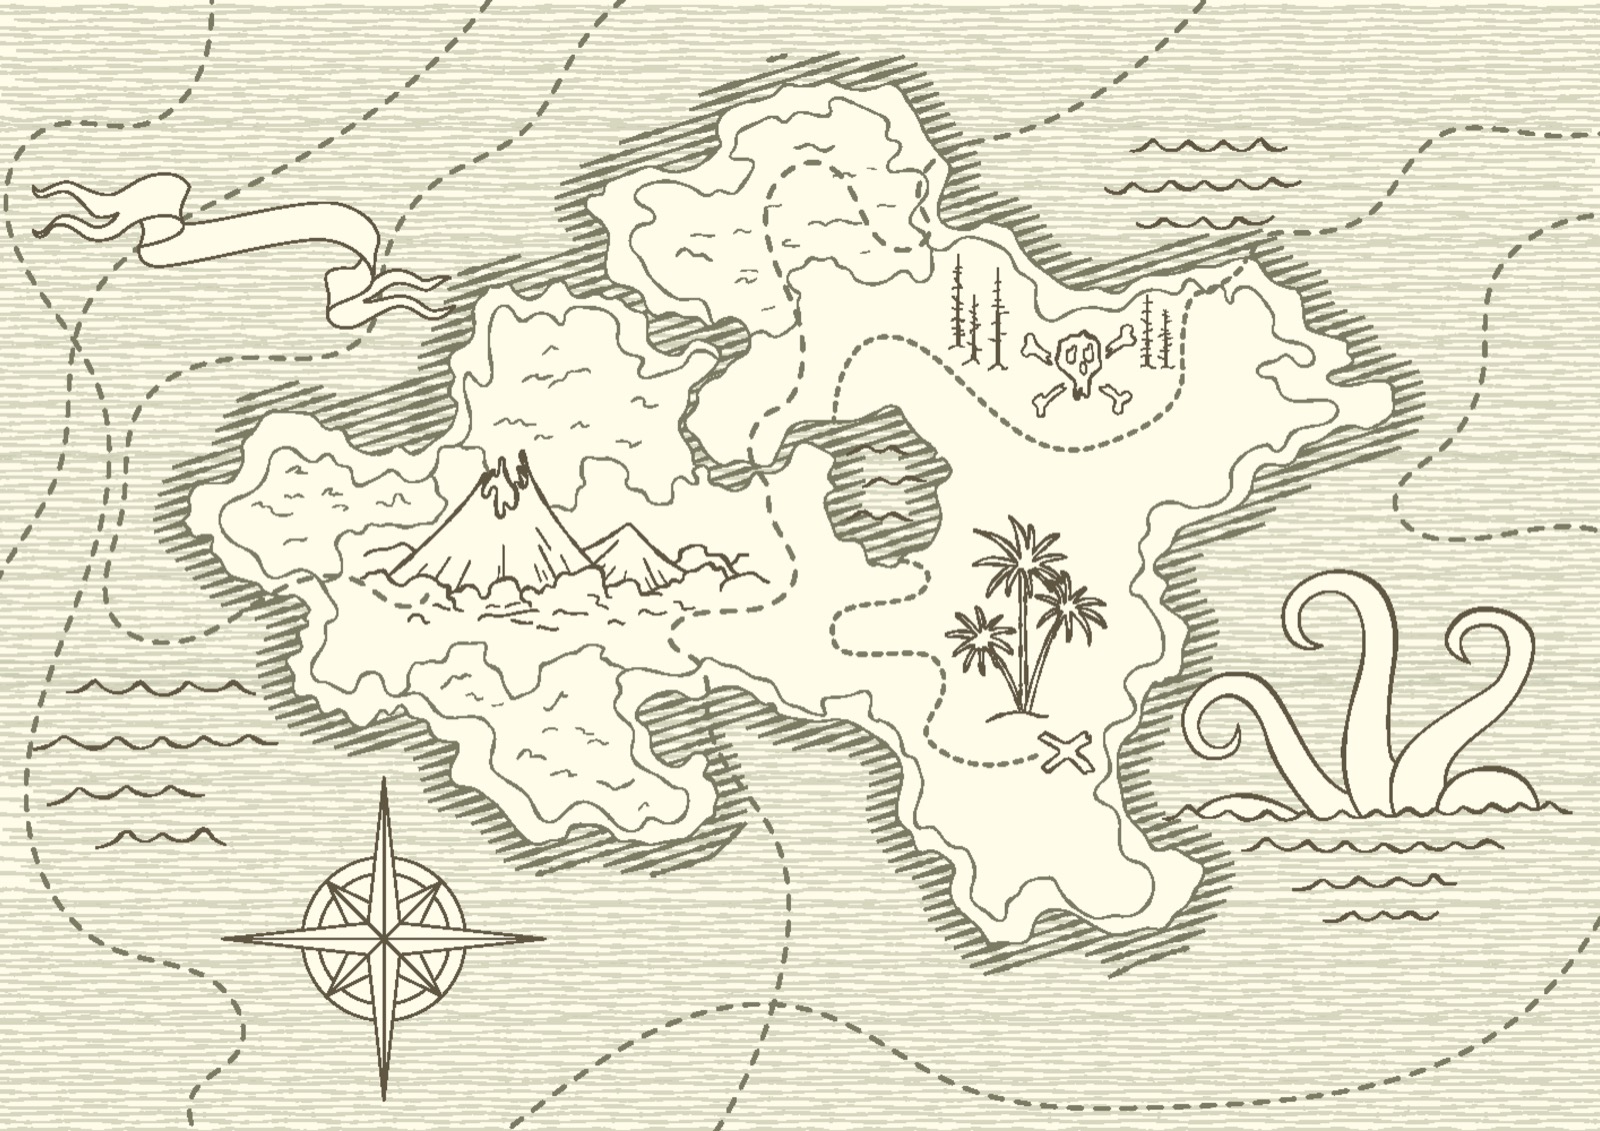 Un antiguo mapa del tesoro pirata dibujado a mano con una rosa de los vientos, rutas y símbolos náuticos clásicos.